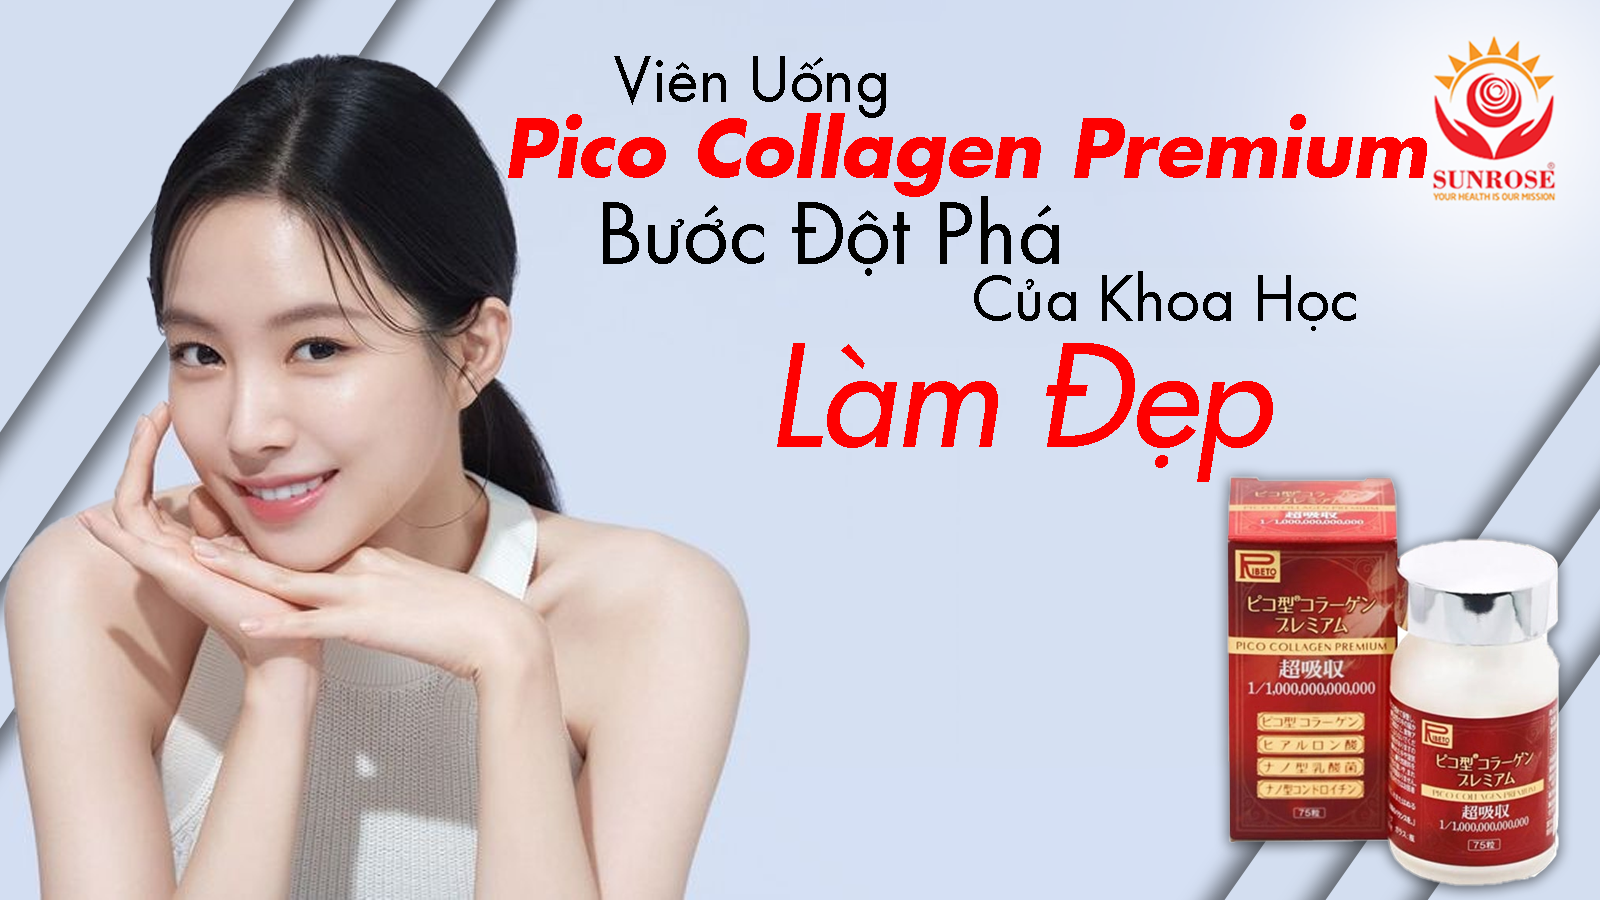 Viên Uống Pico Collagen Premium – Bước Đột Phá Của Khoa Học Làm Đẹp